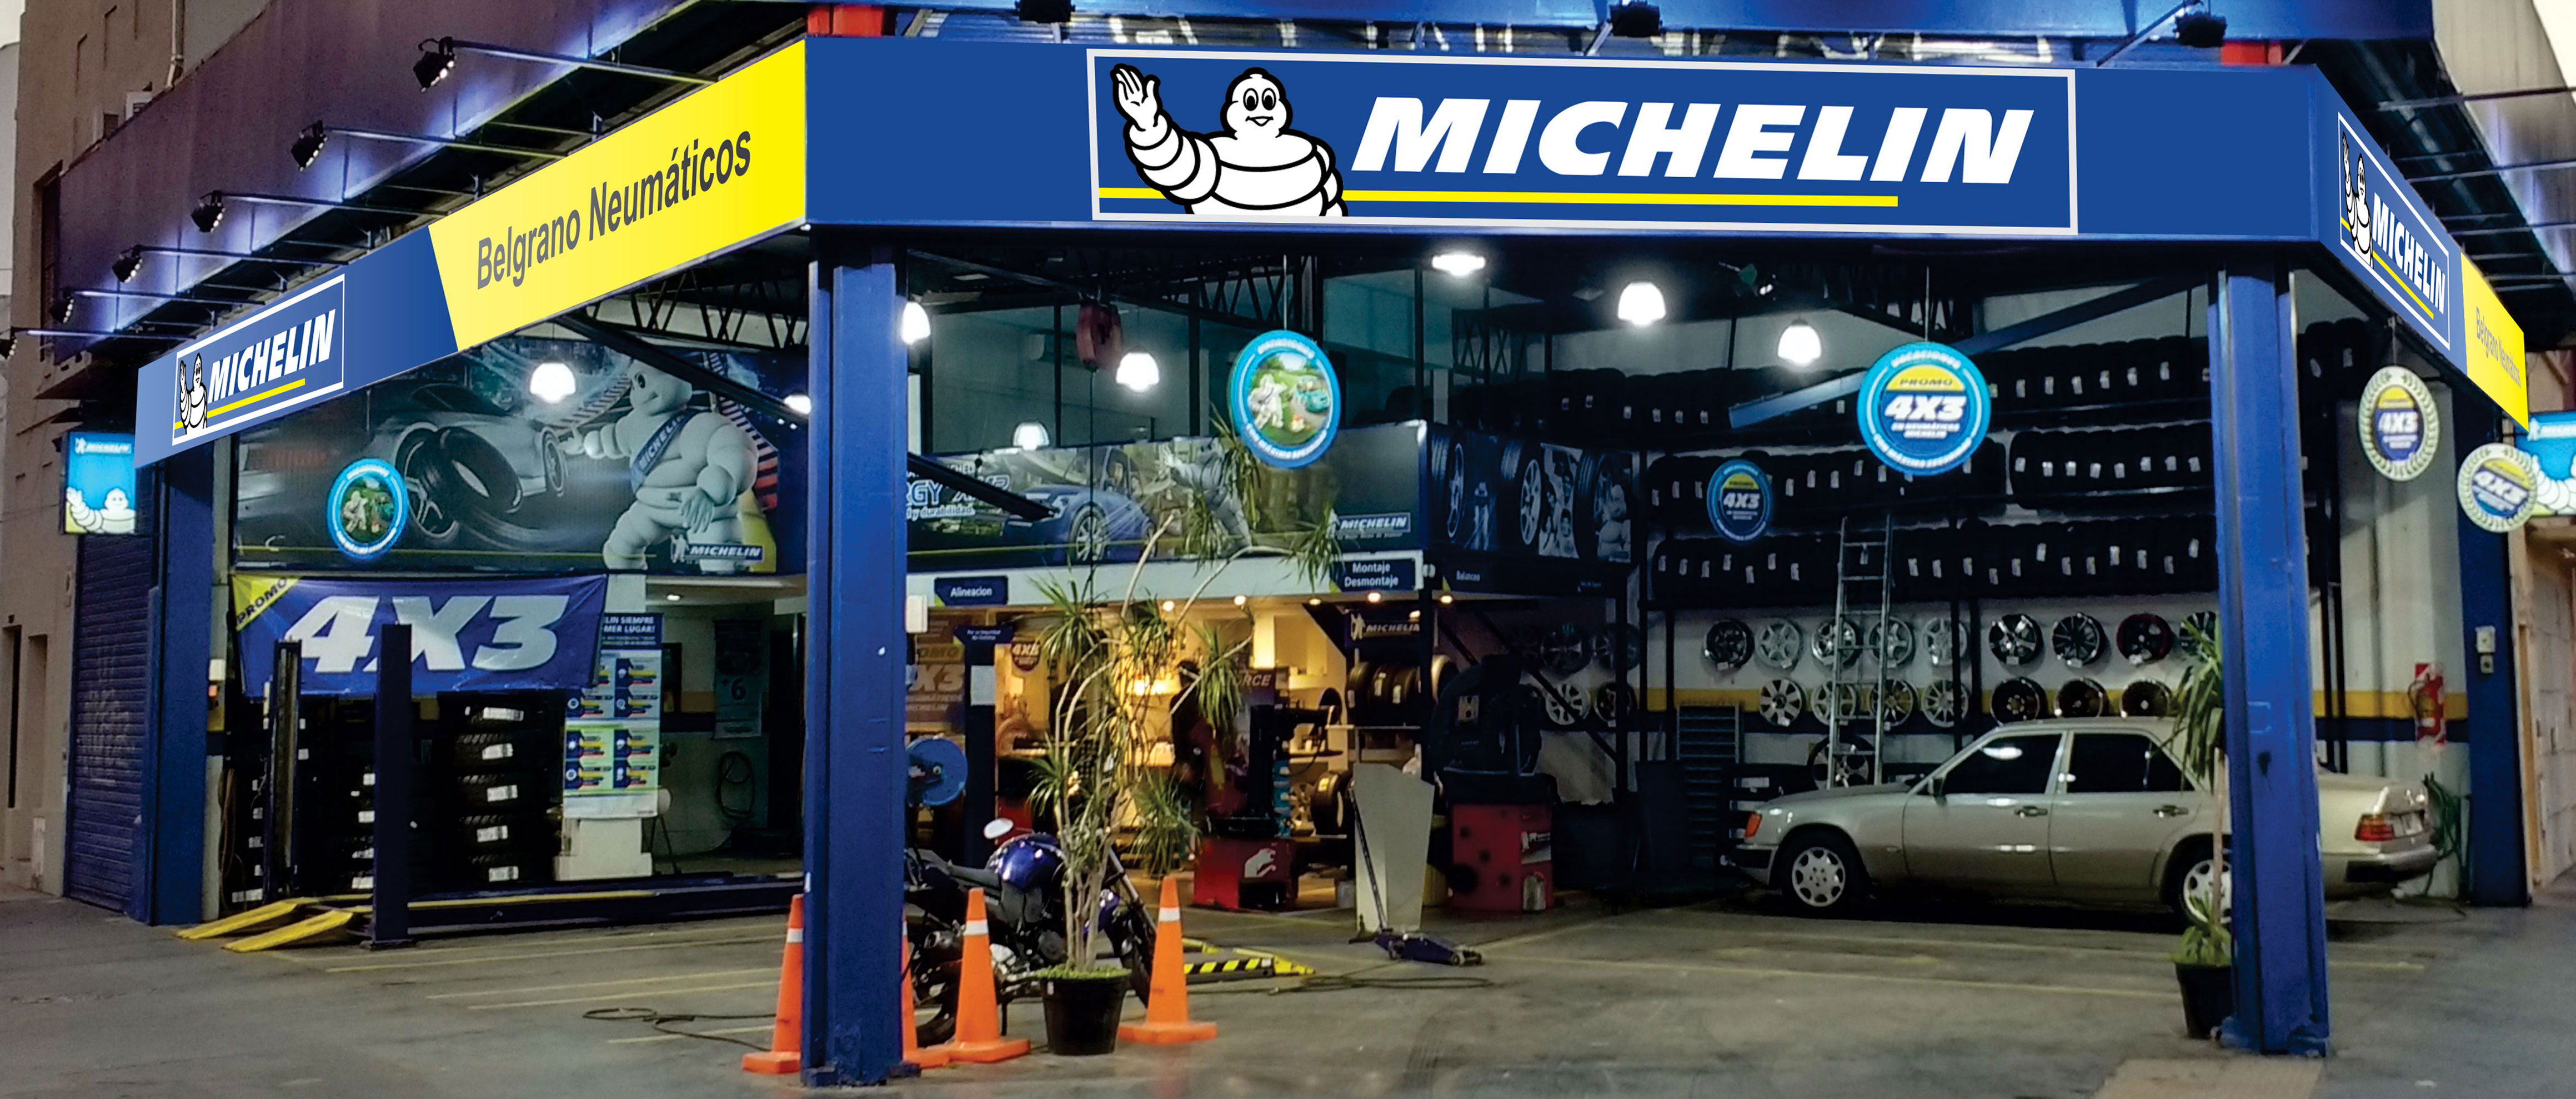 BNeumáticos Michelin en el barrio de Belgrano, Ciudad de Buenos Aires. Venta de neumáticos Michelin, BFGoodrich, Firestone, Continental, Yokohama y más